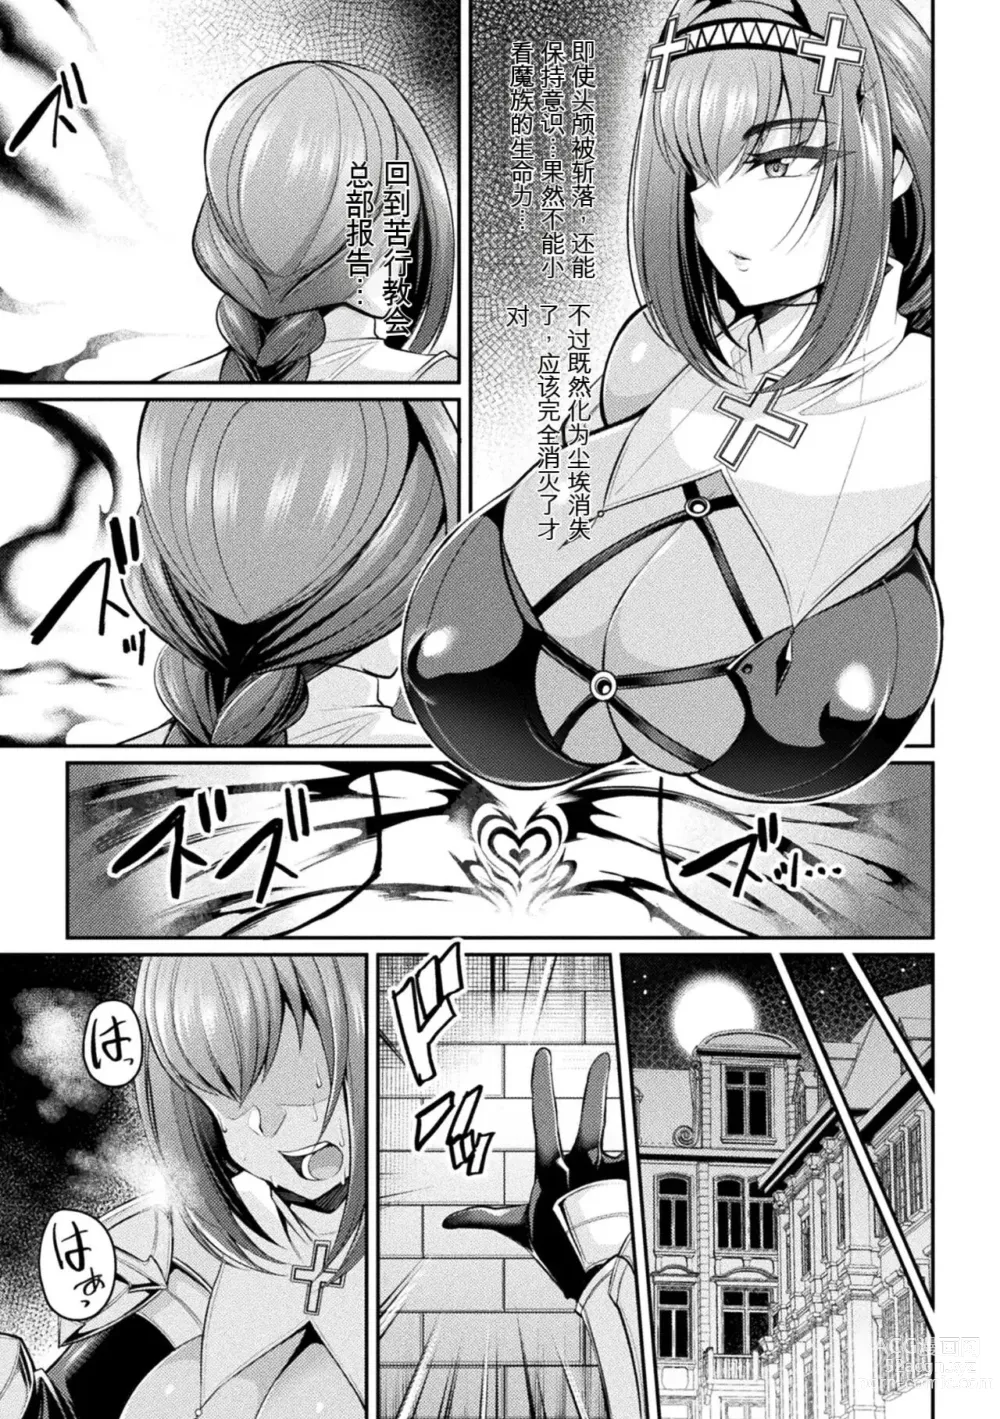 Page 3 of manga Taima Kishi Carla ~A knight fallen in lust~